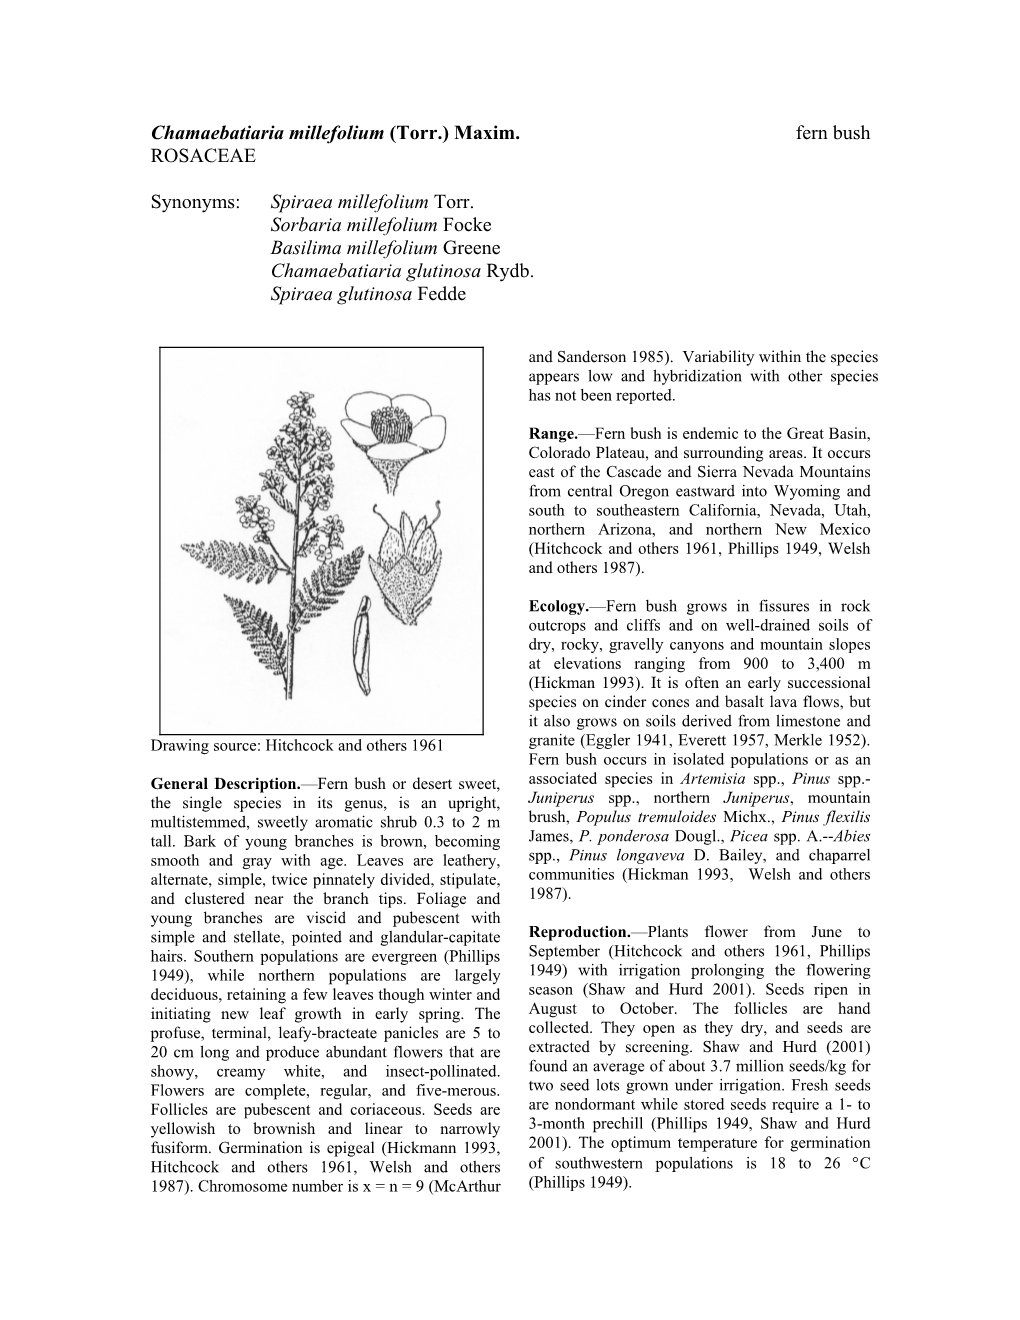 Chamaebatiaria Millefolium (Torr.) Maxim